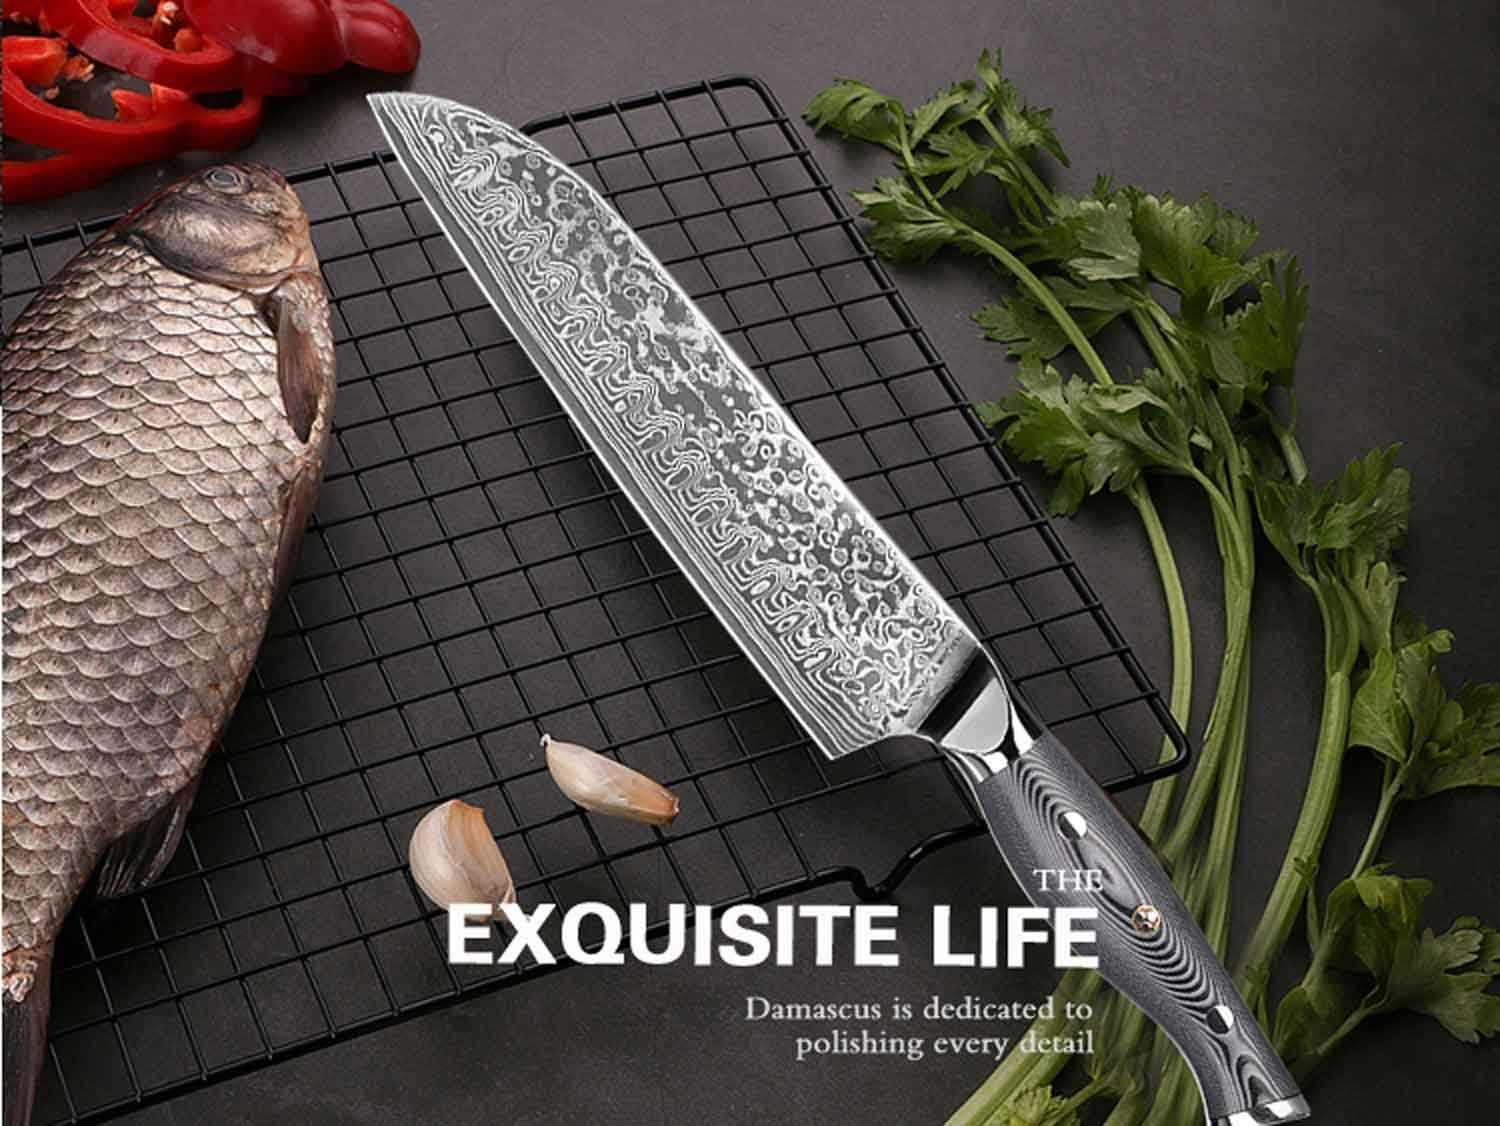 Kochmesser Messer Damast-Klinge Küchenmesser Damastmesser Carbon Muxel Santokumesser